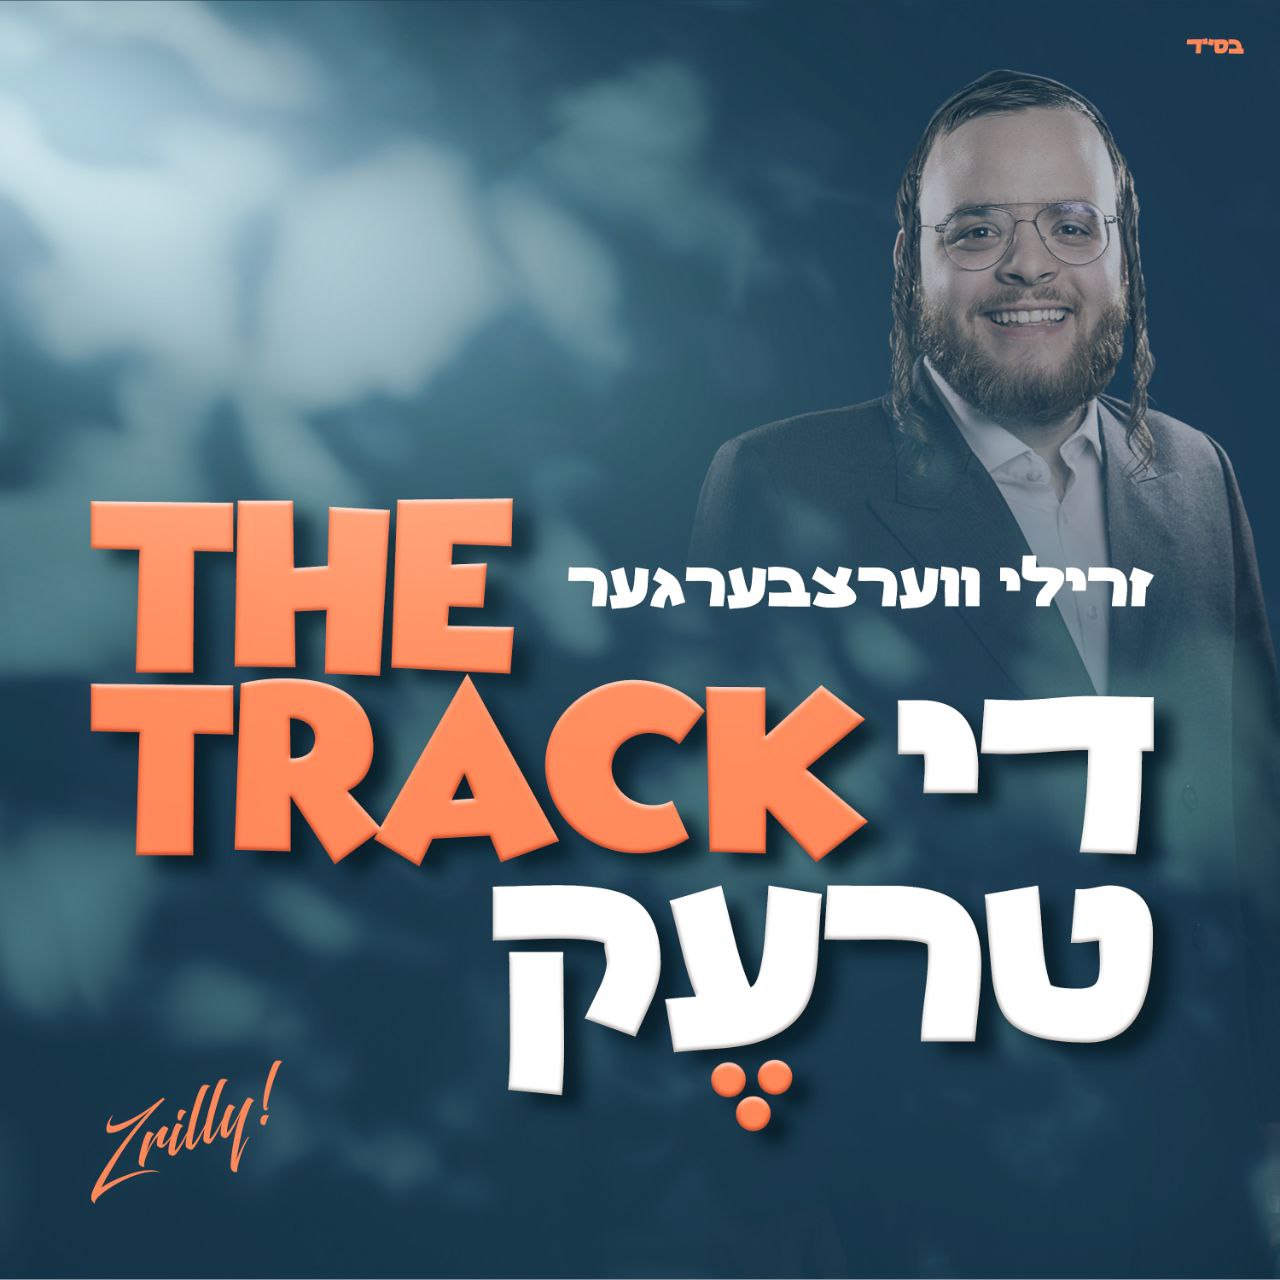 Zrilly Werzberger - The Track (Single)